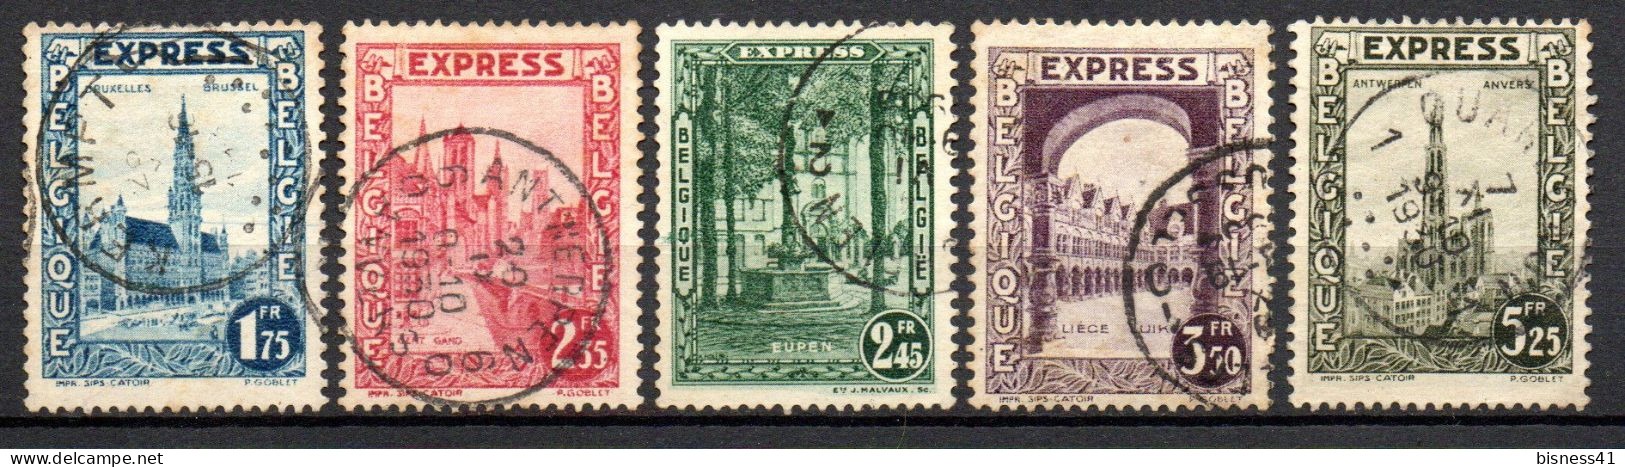 Col33 Belgique Belgium 1929 Expres N° 1 à 5 Oblitéré Cote : 26,50€ - Oblitérés